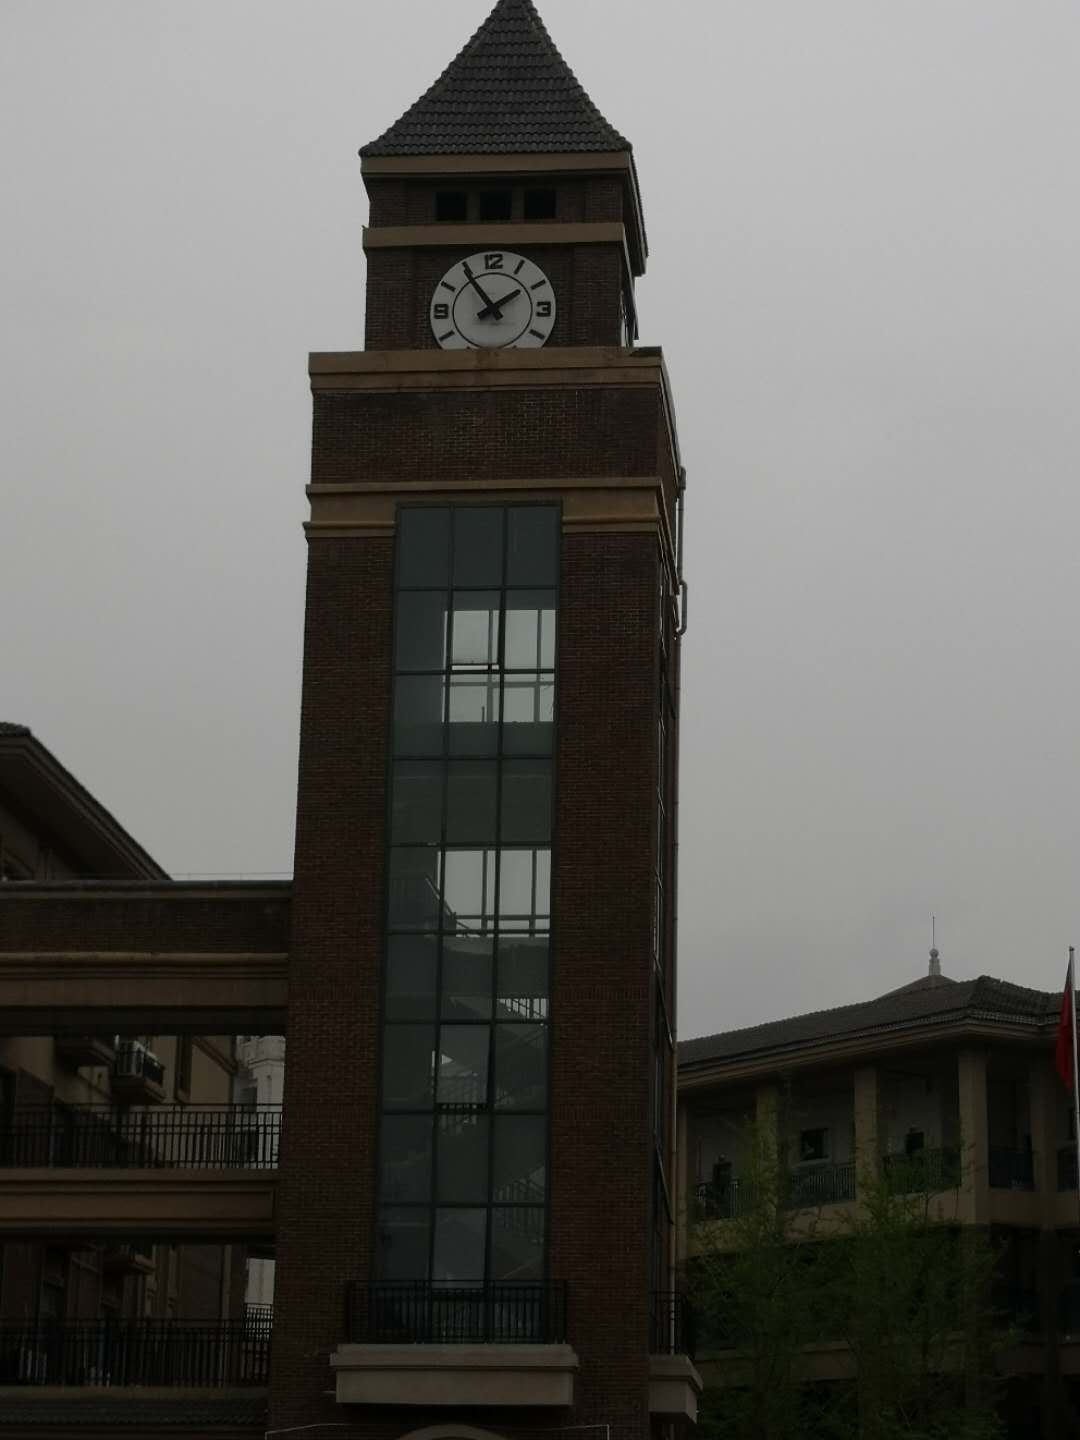 塔楼大钟、钟楼塔钟、塔钟维修更换首选烟台启明时钟厂家直供价格优惠